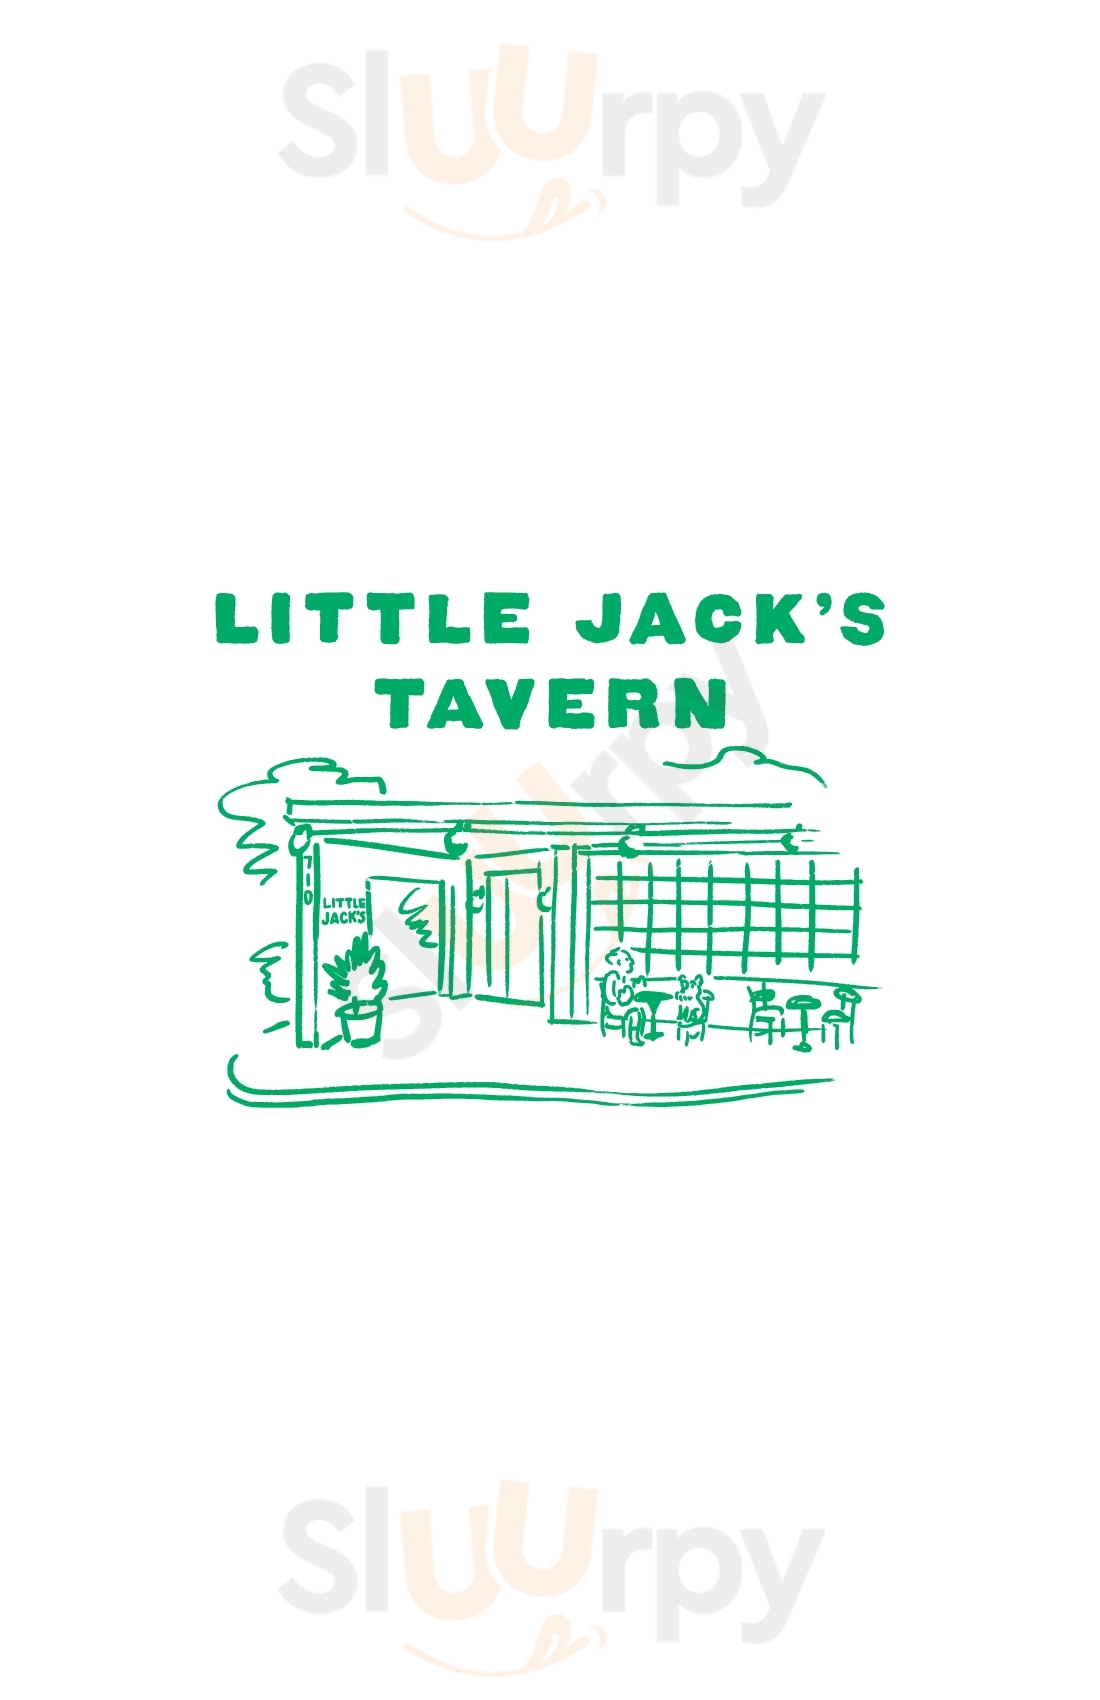 Little Jack's Tavern Charleston Menu - 1